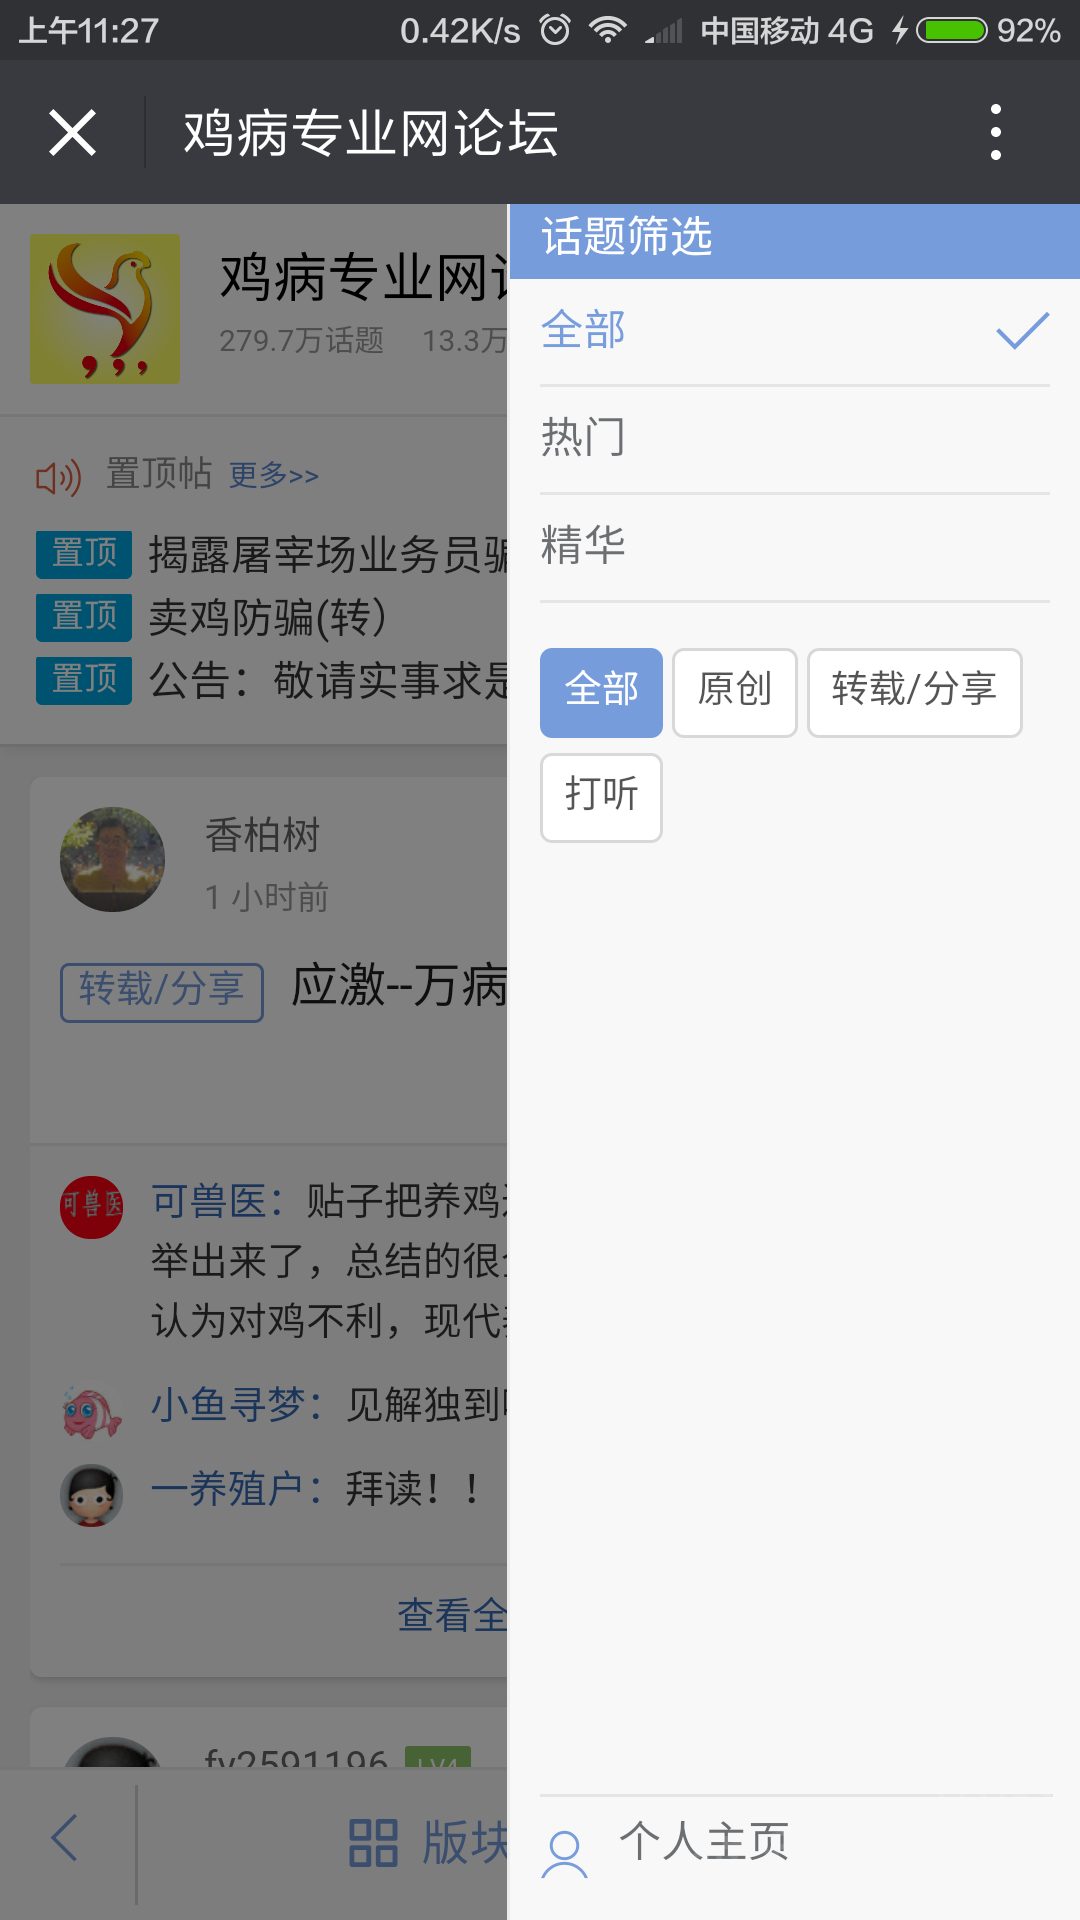 Screenshot_2016-05-23-11-27-14_com.tencent.mm.png